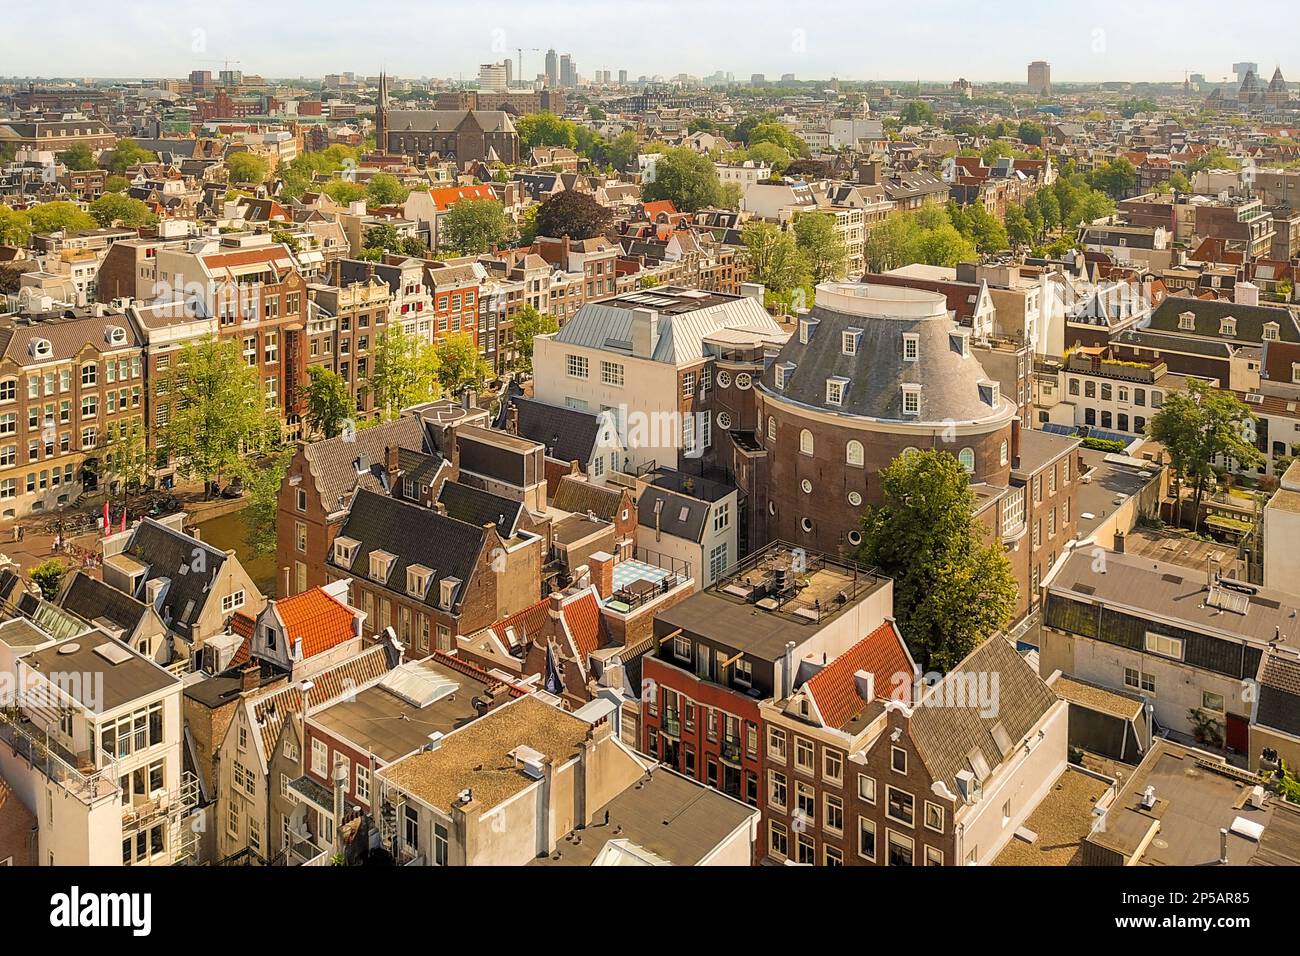 Amsterdam, Niederlande - 10. April 2021: Eine Stadt von der Spitze eines Gebäudes mit vielen Gebäuden in der Mitte des Bildes und Bäumen auf der anderen Seite Stockfoto